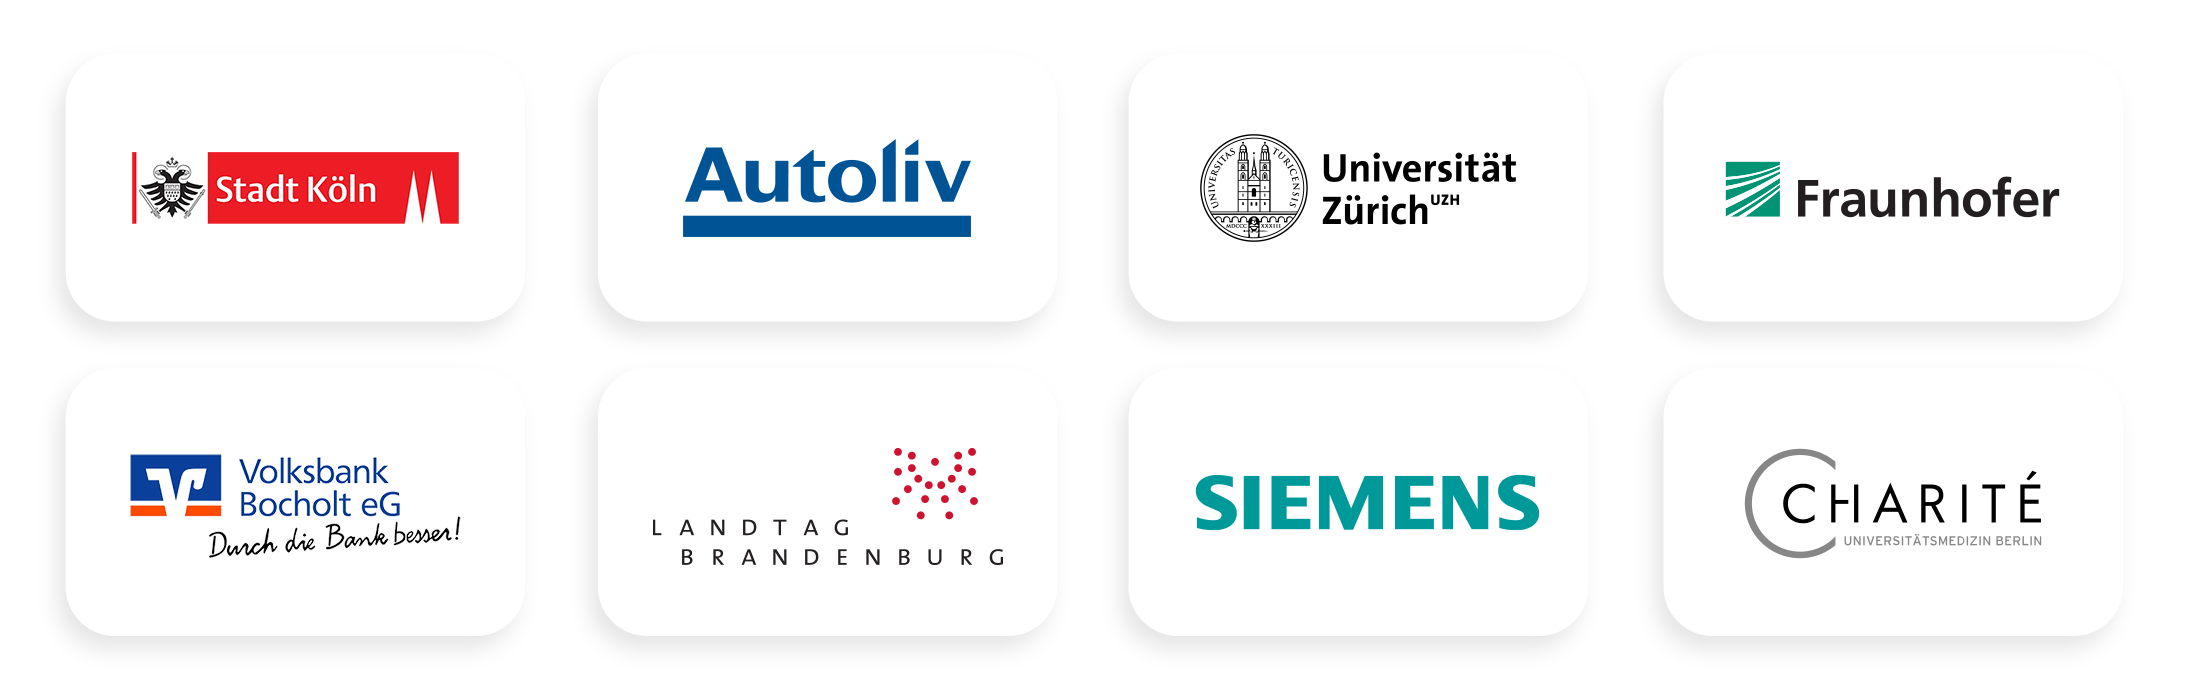 Kunden von OpenProject: Stadt Köln, Autoliv, Universität Zürich, Fraunhofer, Volksbank Bocholt, Landtag Brandenburg, Siemens, Charité Berlin